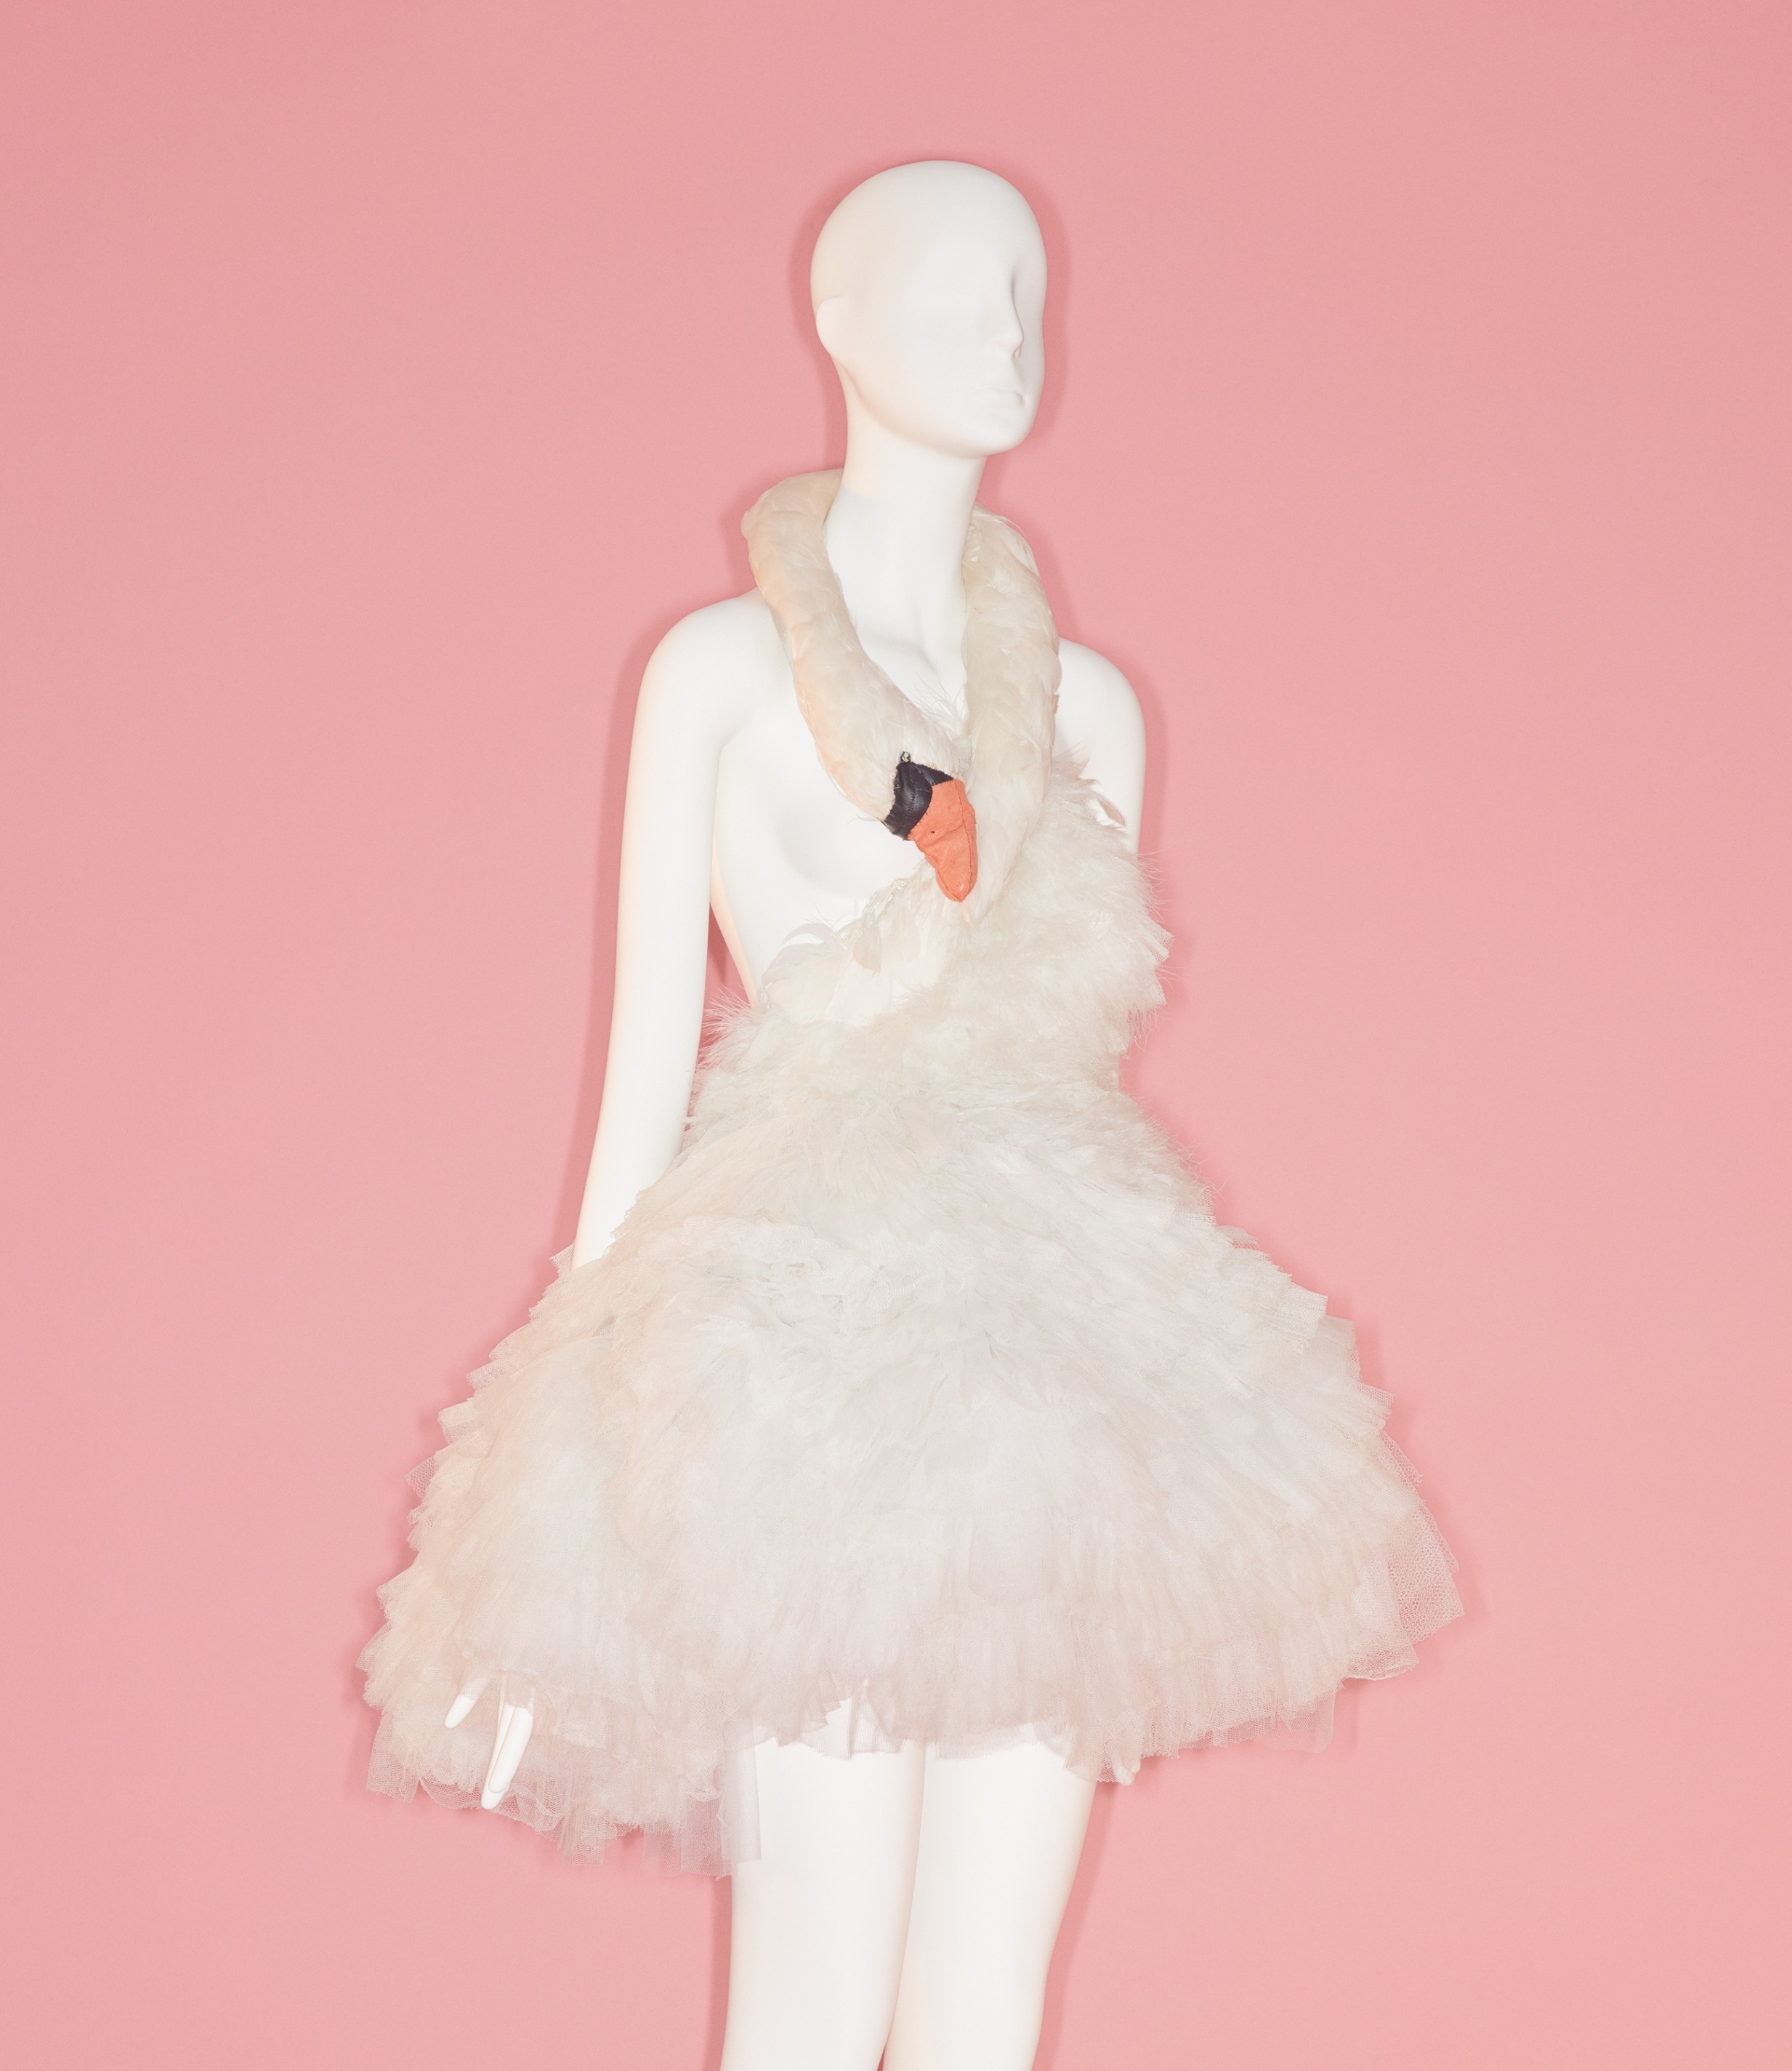 展覧会では歌手ビョークが２００１年のアカデミー賞授賞式で着た「白鳥ドレス」も展示されている/Image courtesy of The Metropolitan Museum of Art, Photo ©Johnny Dufort, 2019